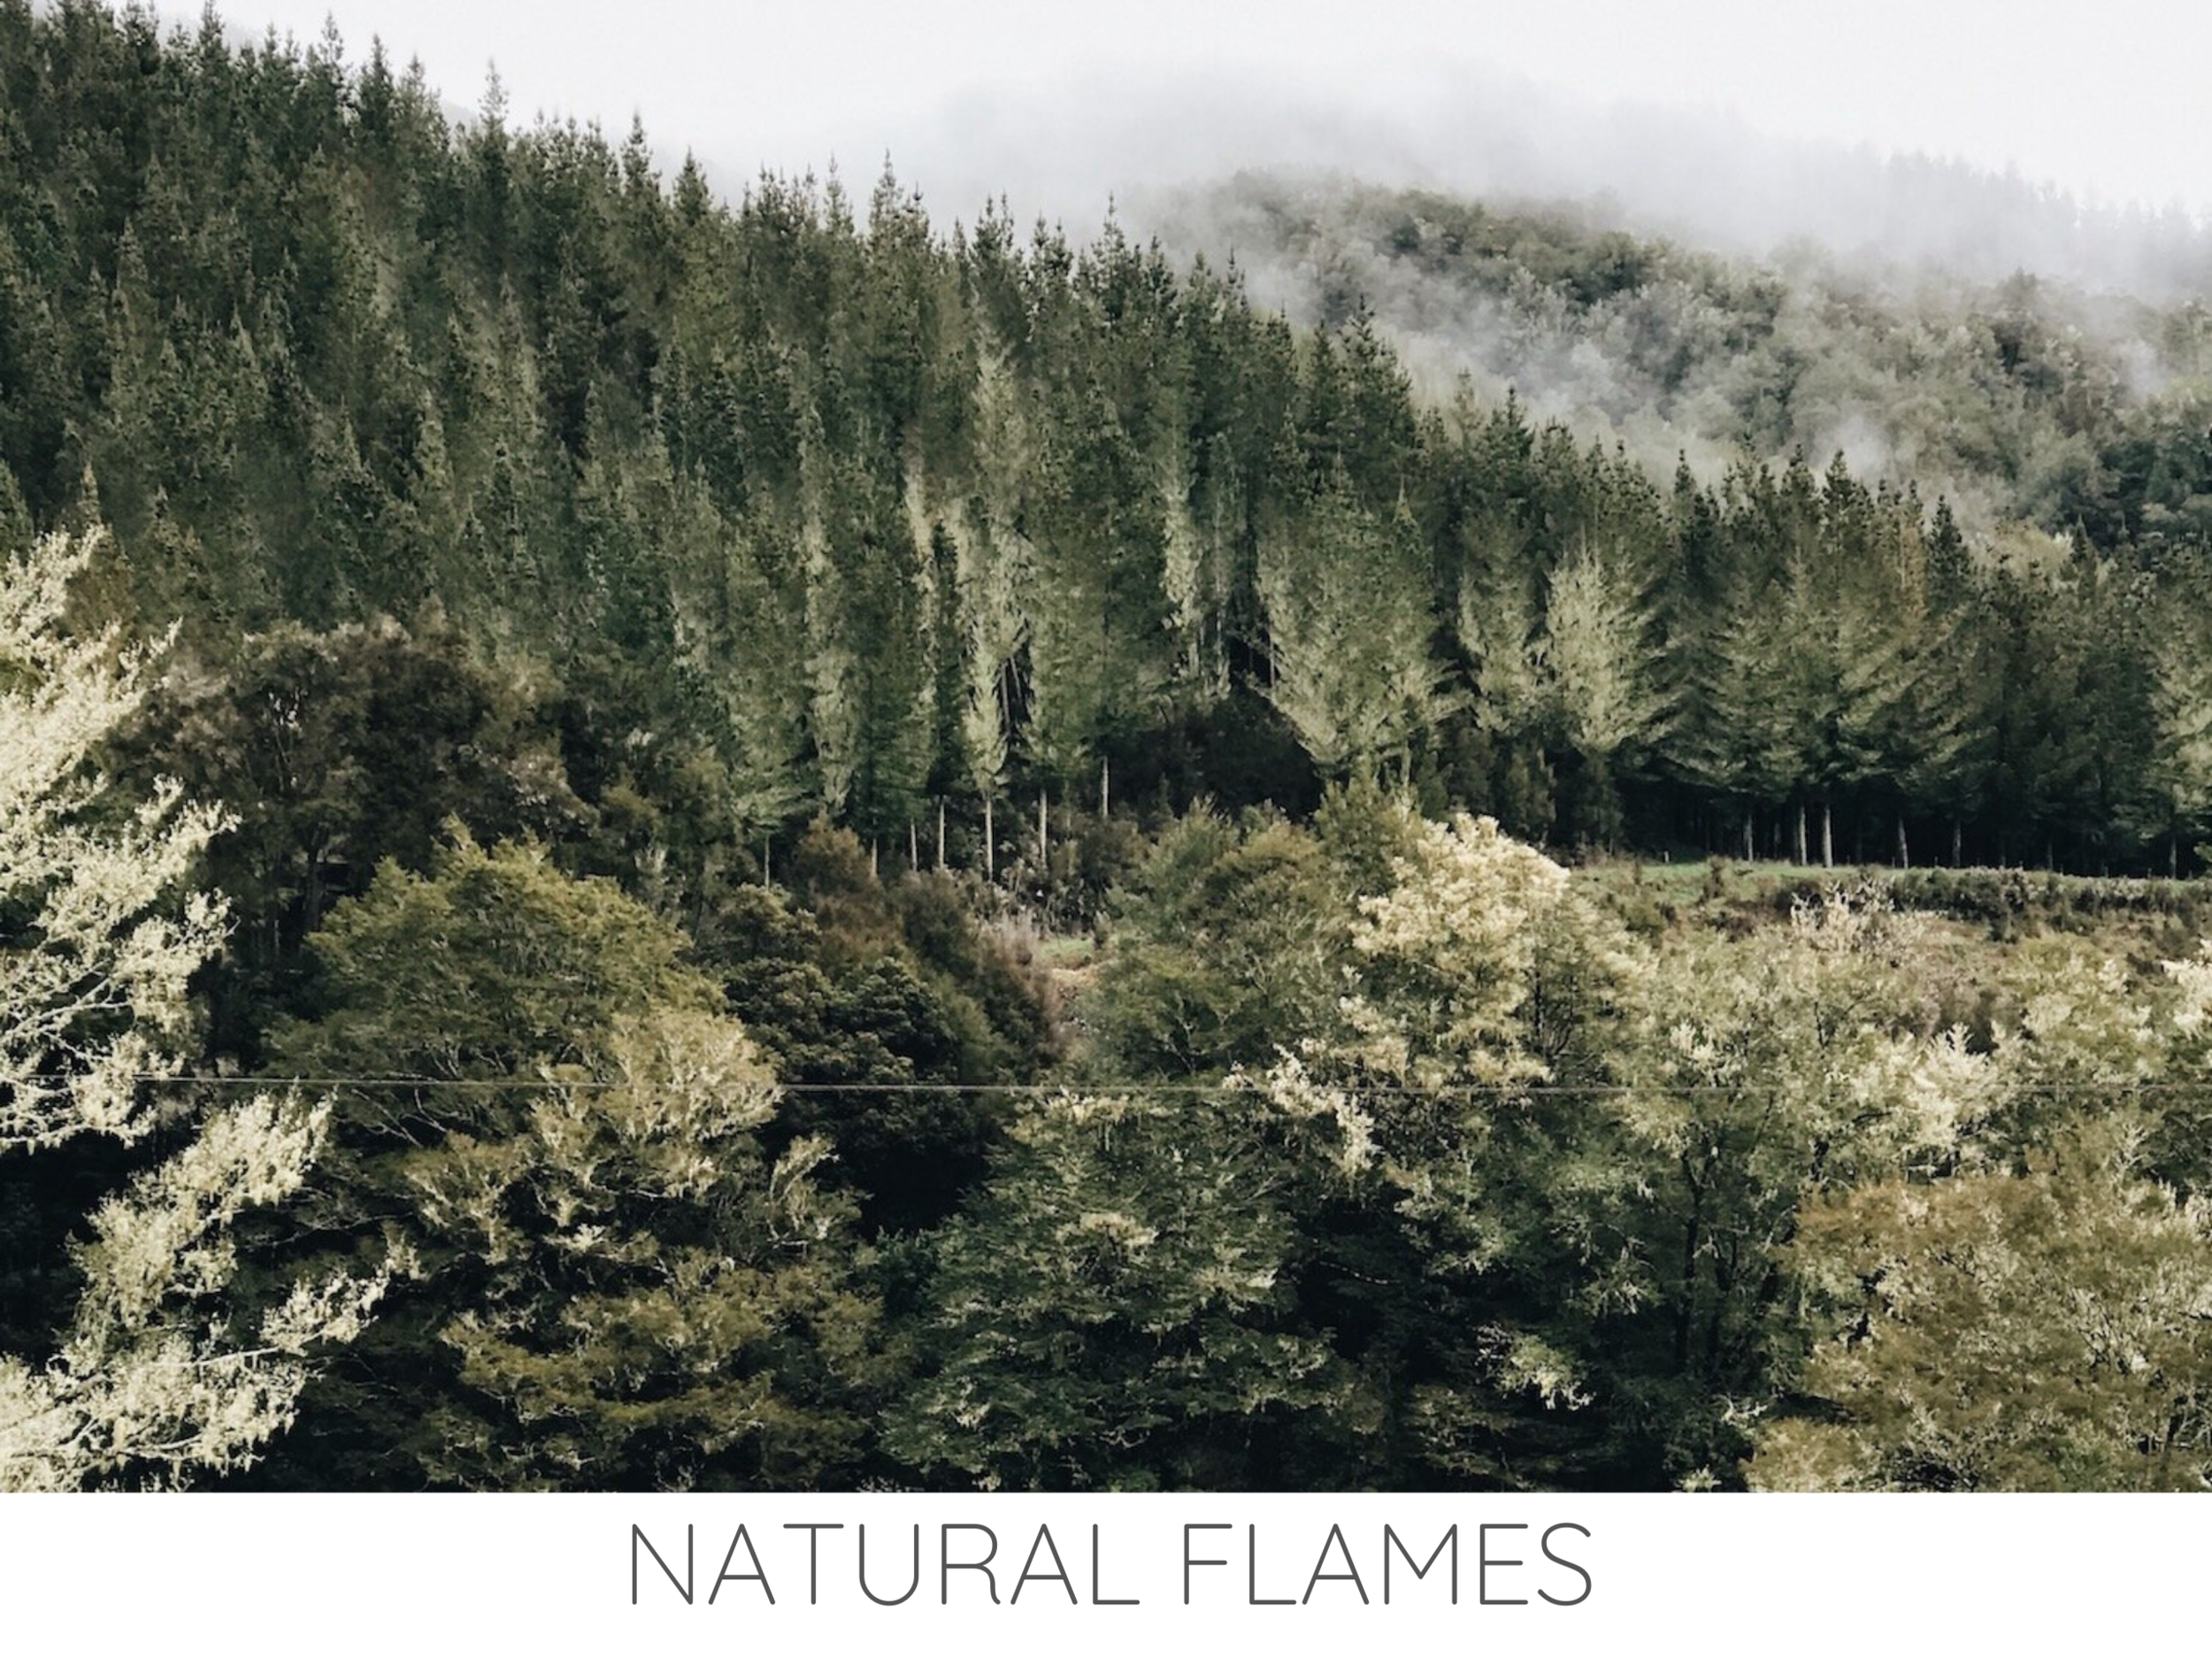 NATURAL FLAMES